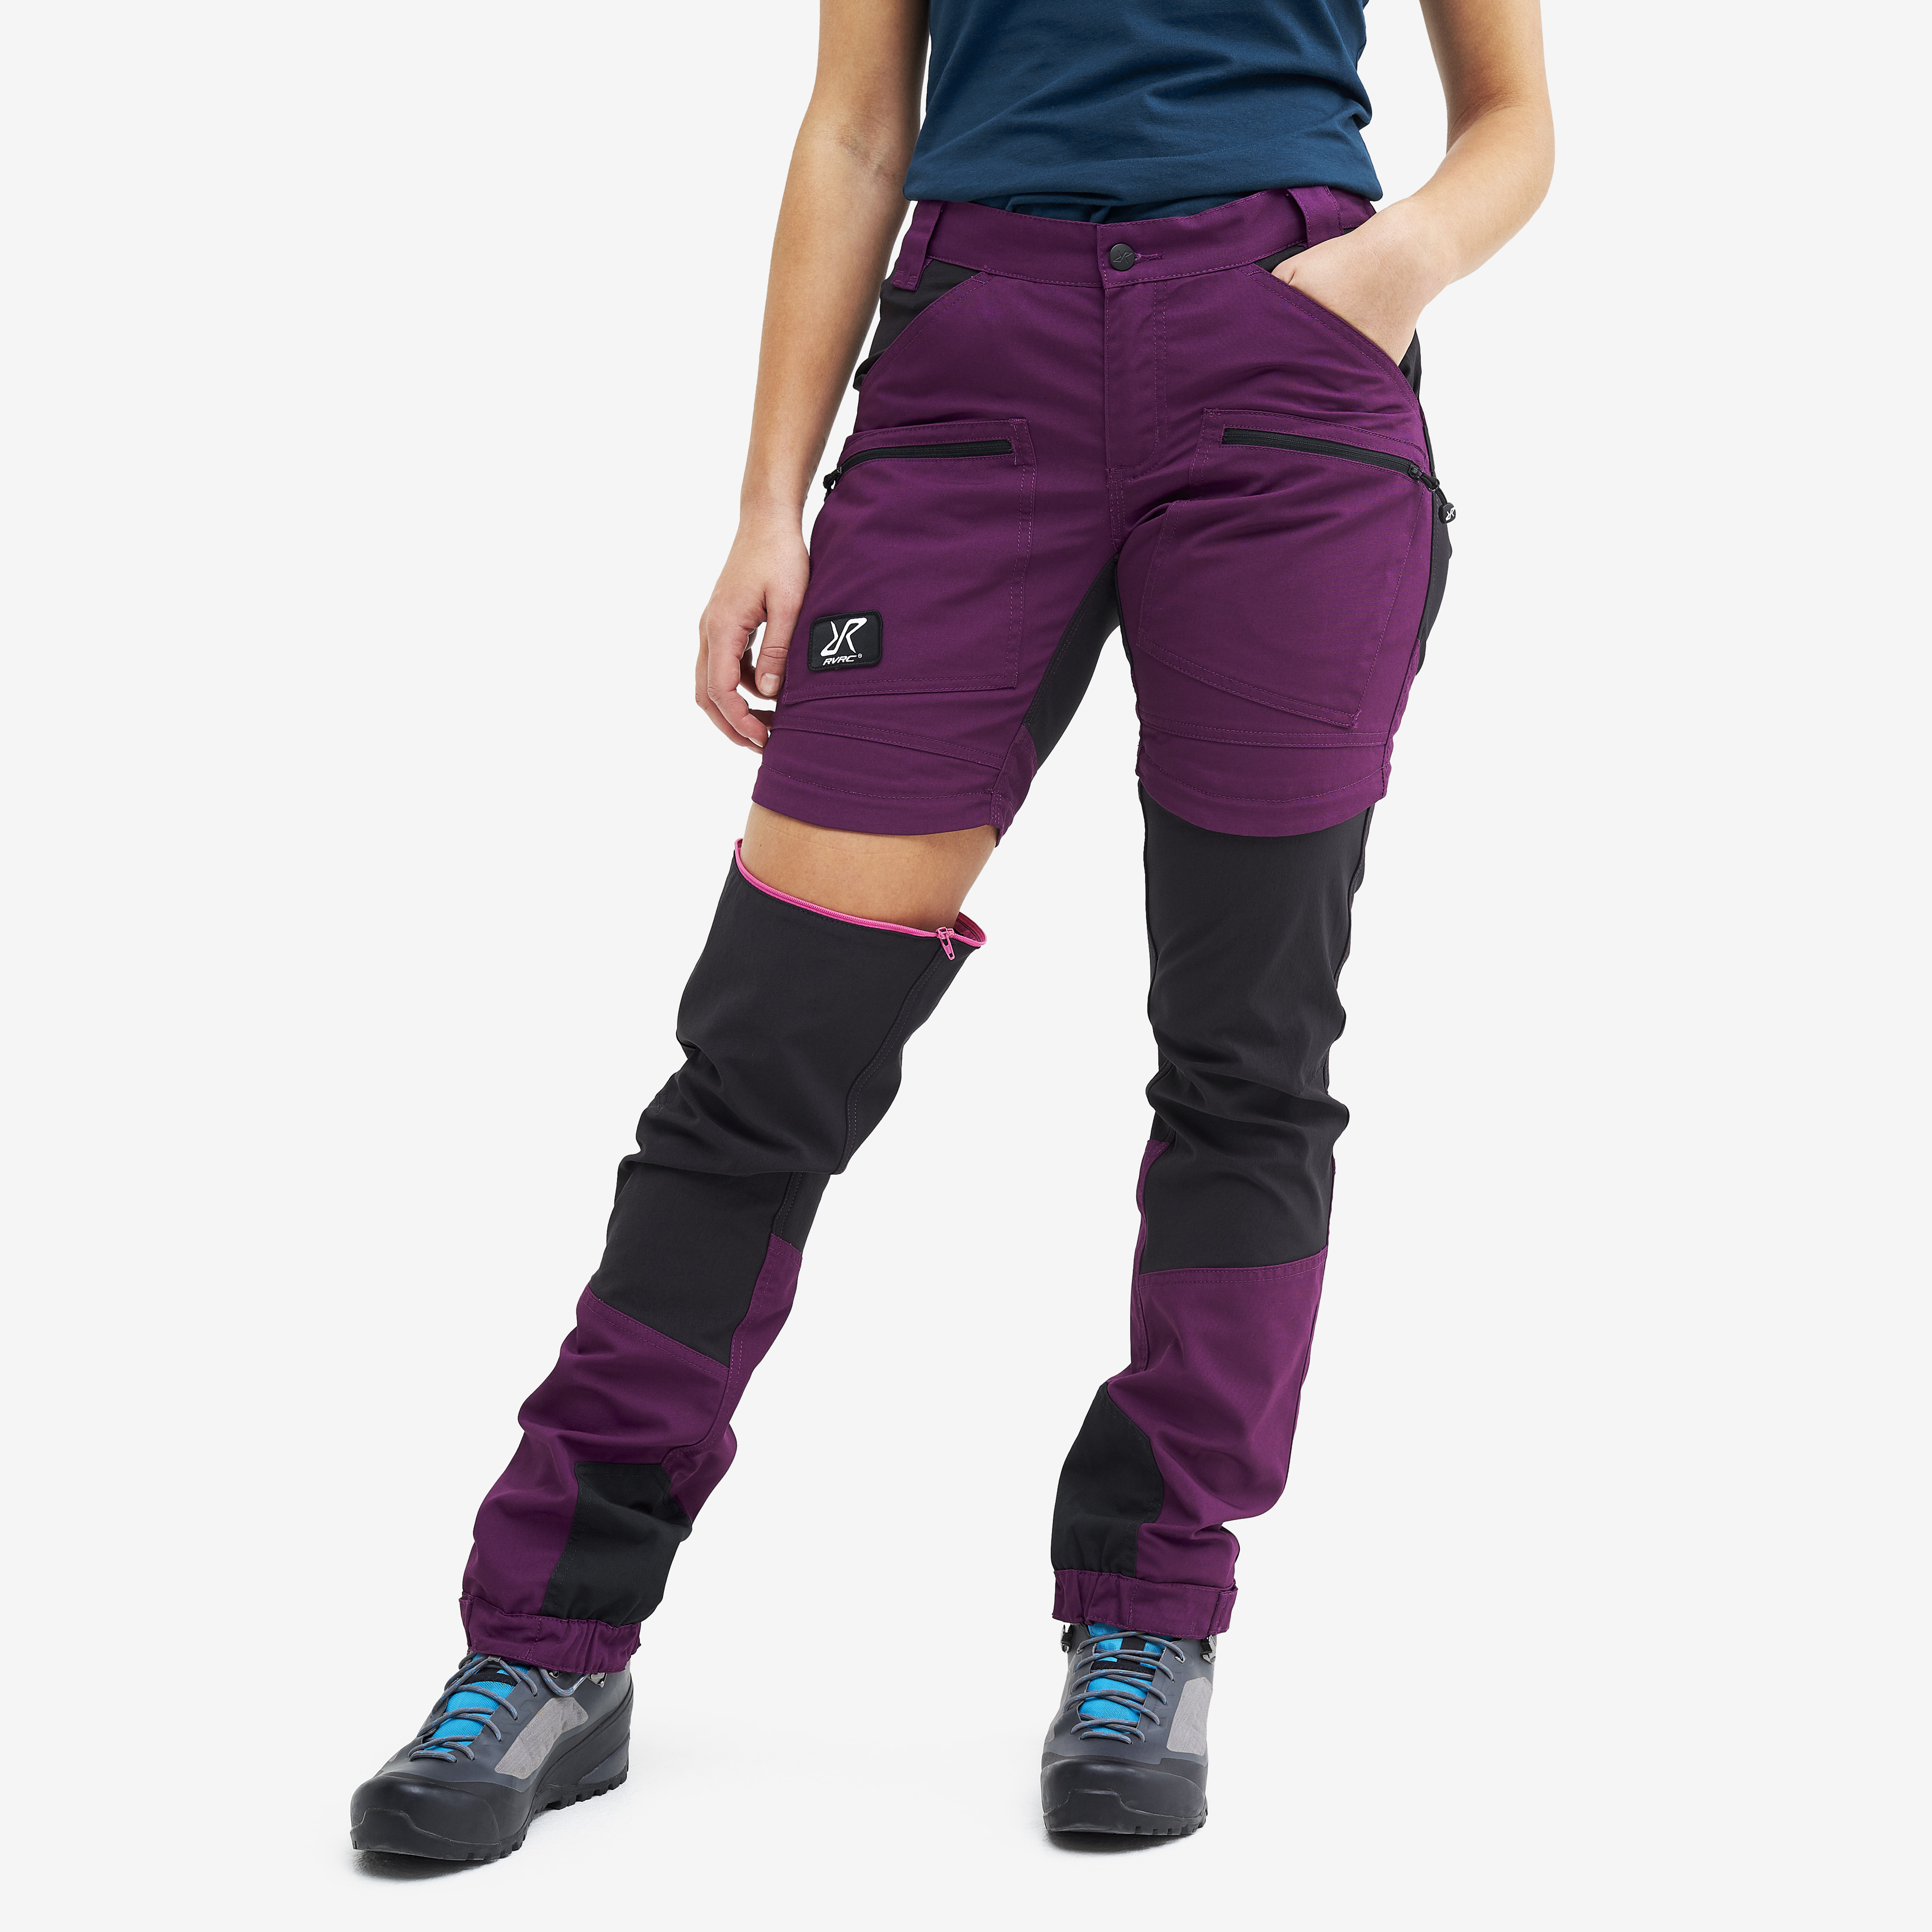 Nordwand Pro Zip-off spodnie trekkingowe damskie purpurowy